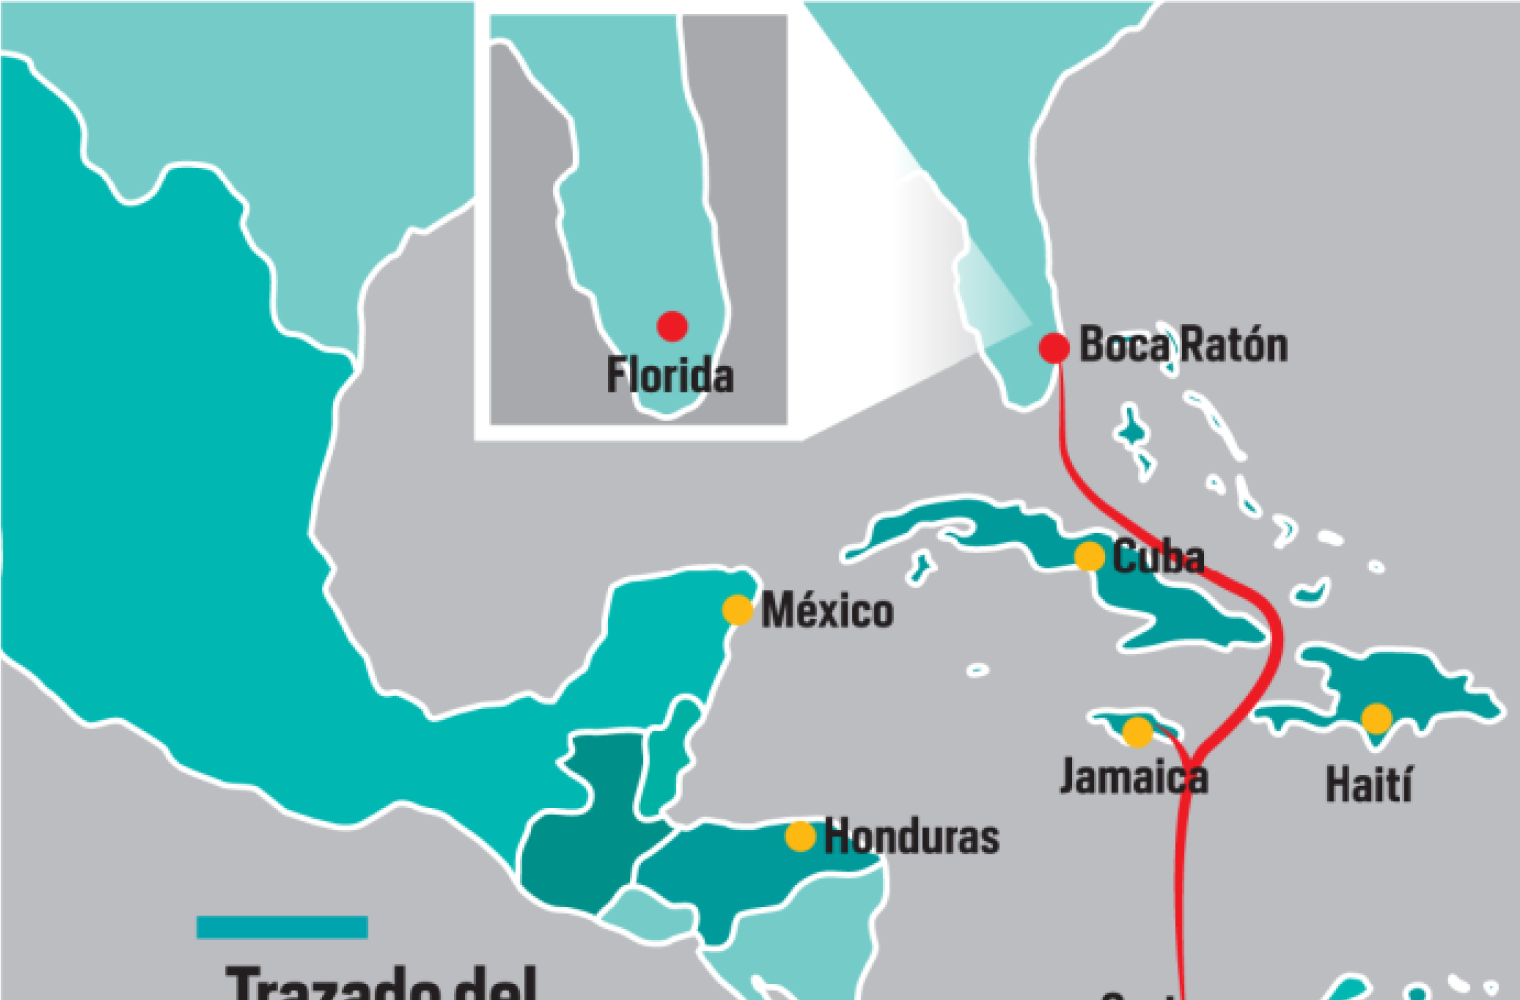 La conectividad del país entra por Cartagena 